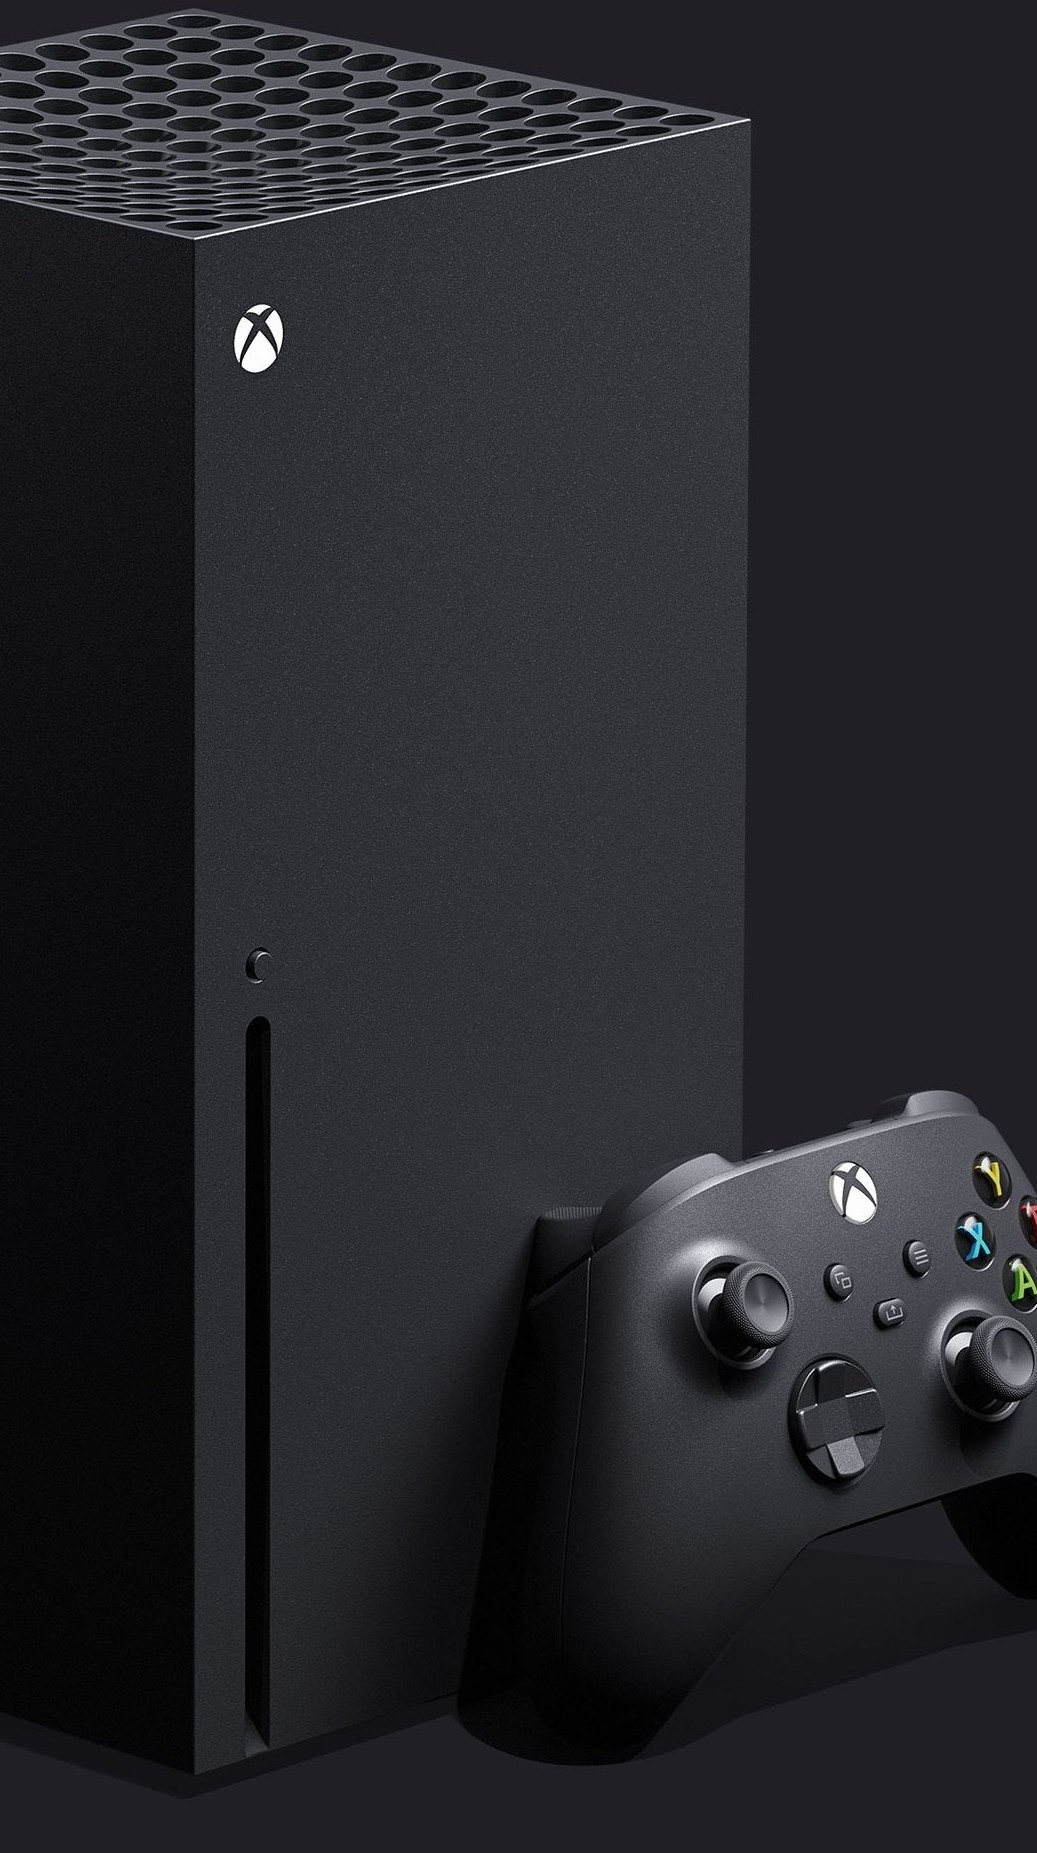 xCloud sobrecarregado não carrega os jogos, Xbox Game Pass